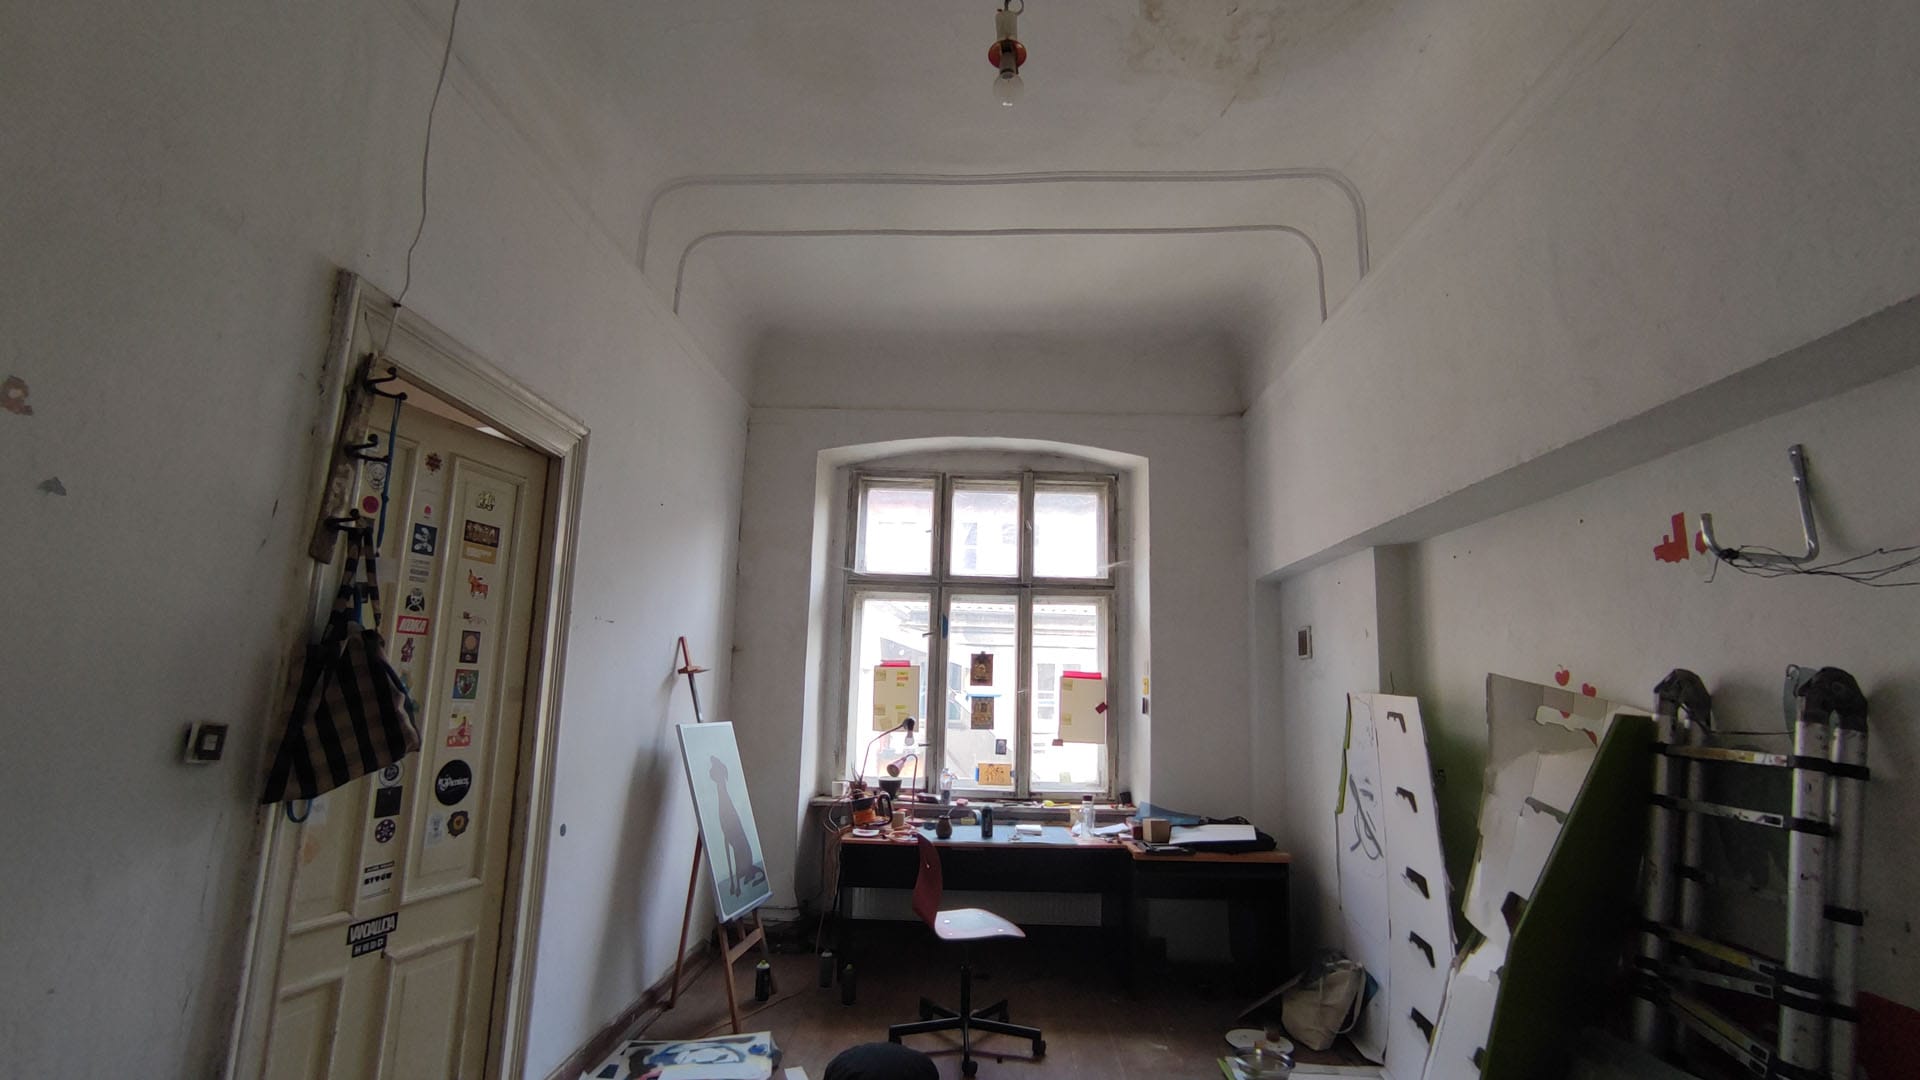 Piętro 1 - Pomieszczenie biurowe - 2021